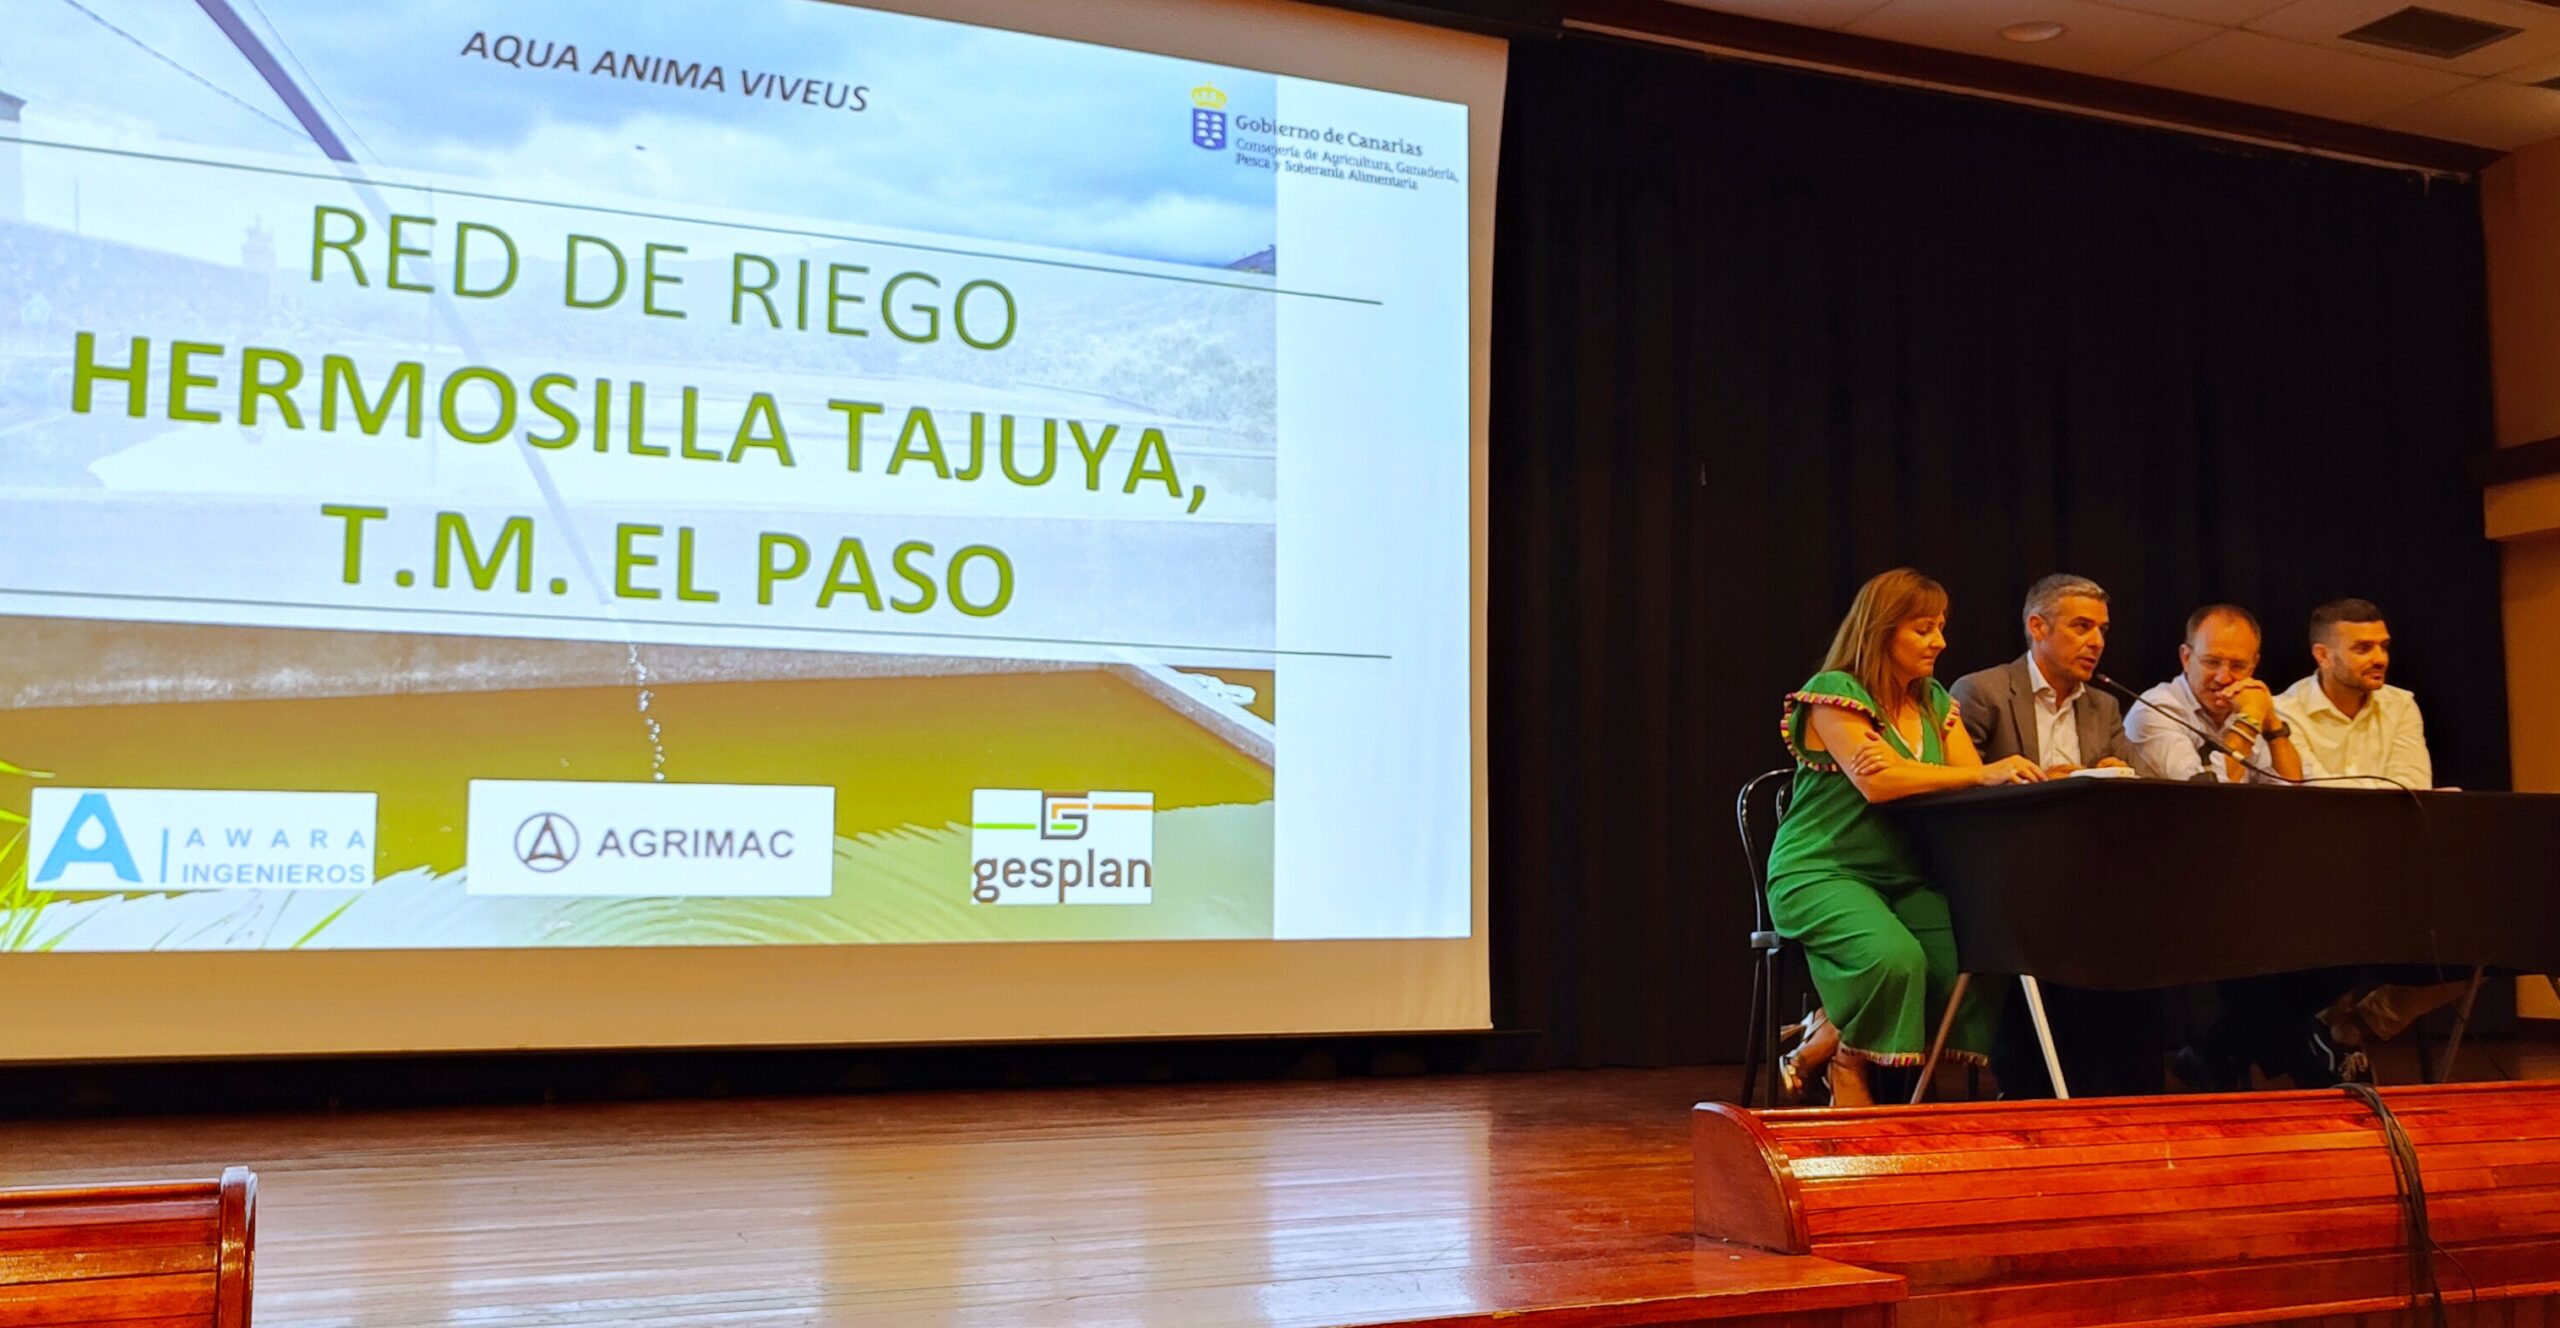 La ejecución de la red de riego de Hermosilla-Tajuya, en El Paso, supondrá una inversión de 7,4 millones de euros y beneficiará a 758 agricultores